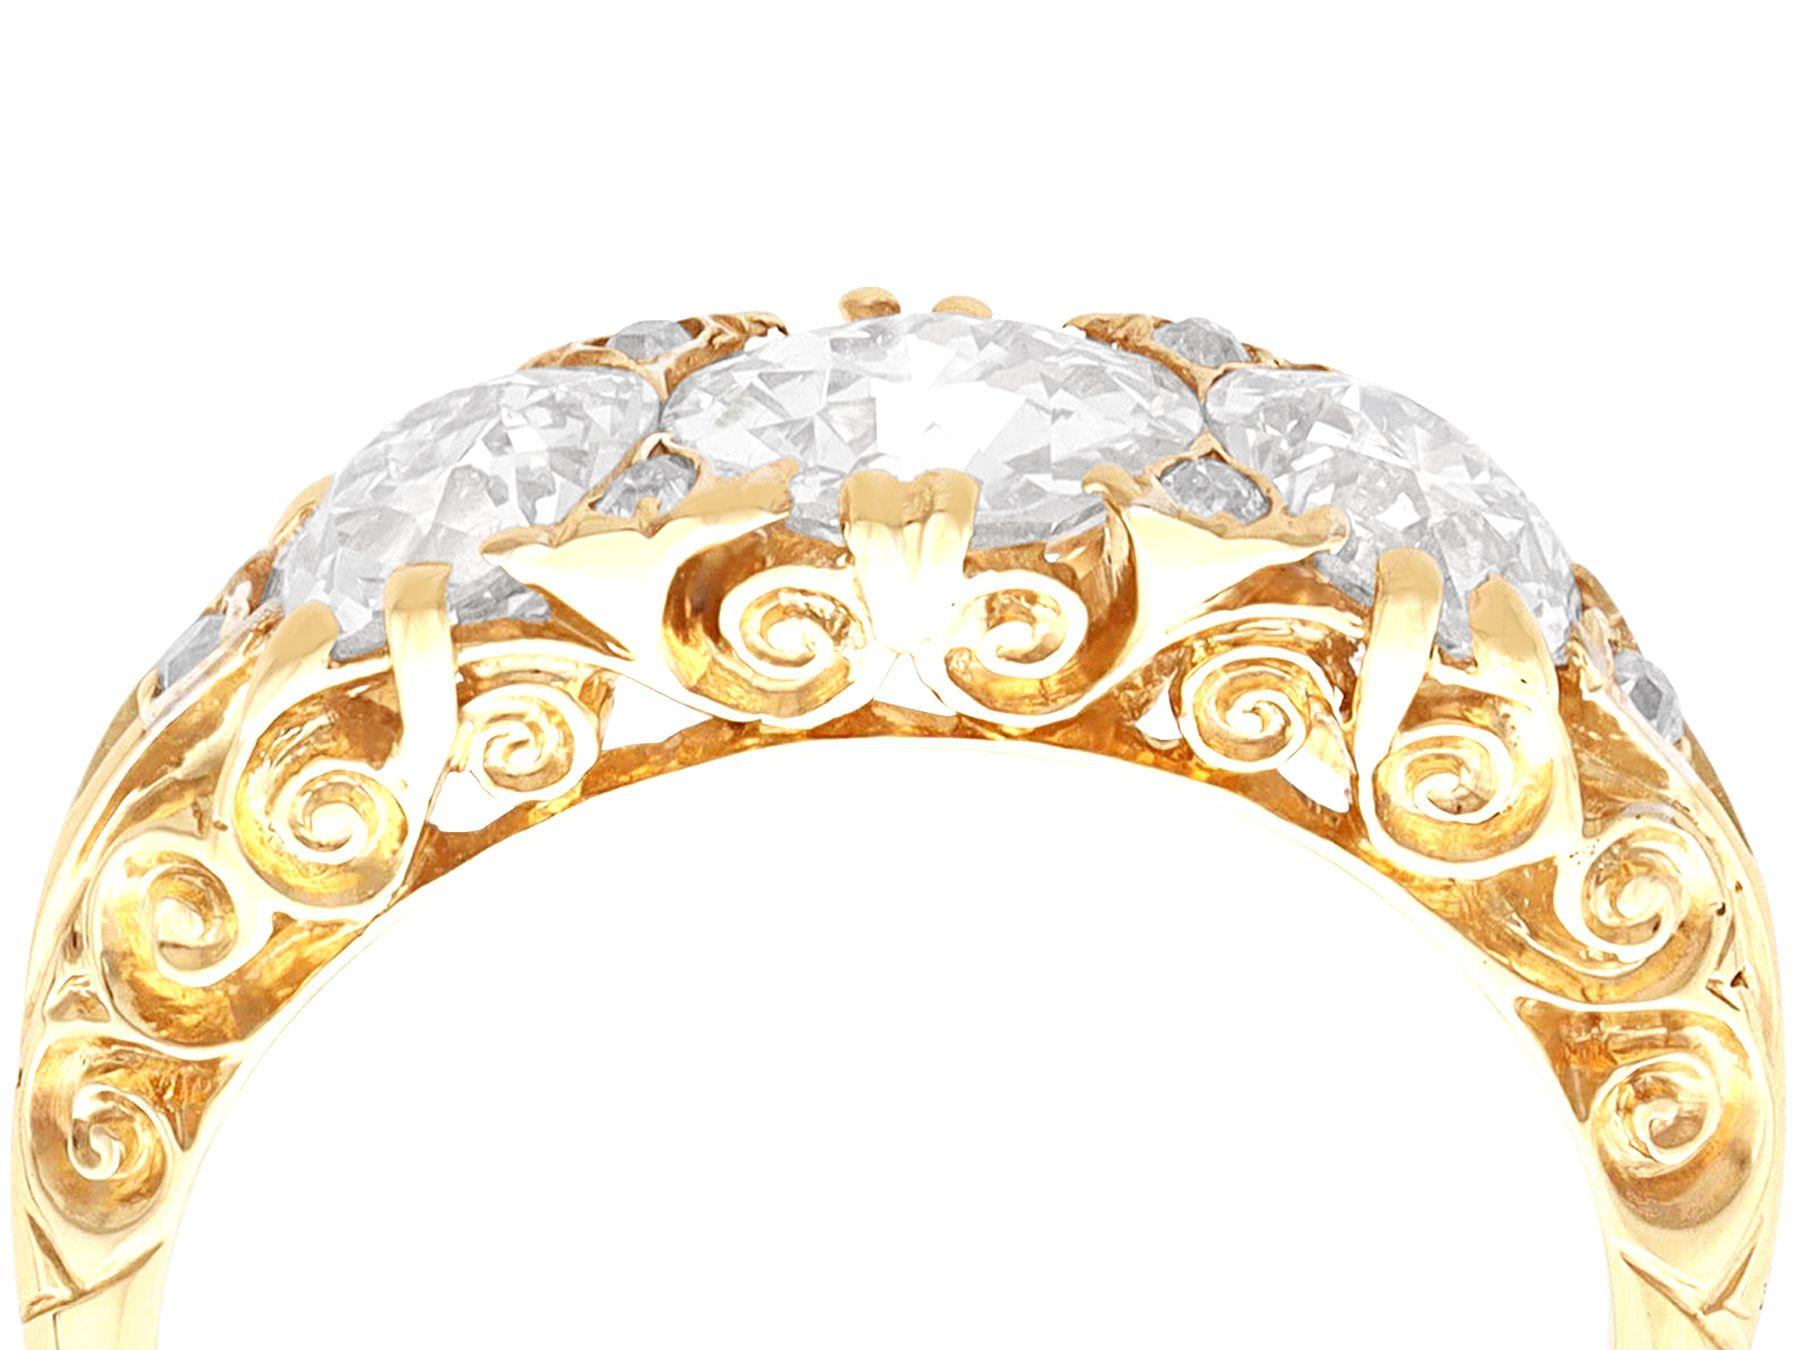 Eine atemberaubende, feine und beeindruckende antiken viktorianischen 2,56 Karat Diamant und 18 Karat Gelbgold drei Stein-Ring; Teil unserer antiken Schmuck / Estate Jewelry Sammlungen.

Dieser atemberaubende antike Trilogie-Ring ist aus 18 Karat